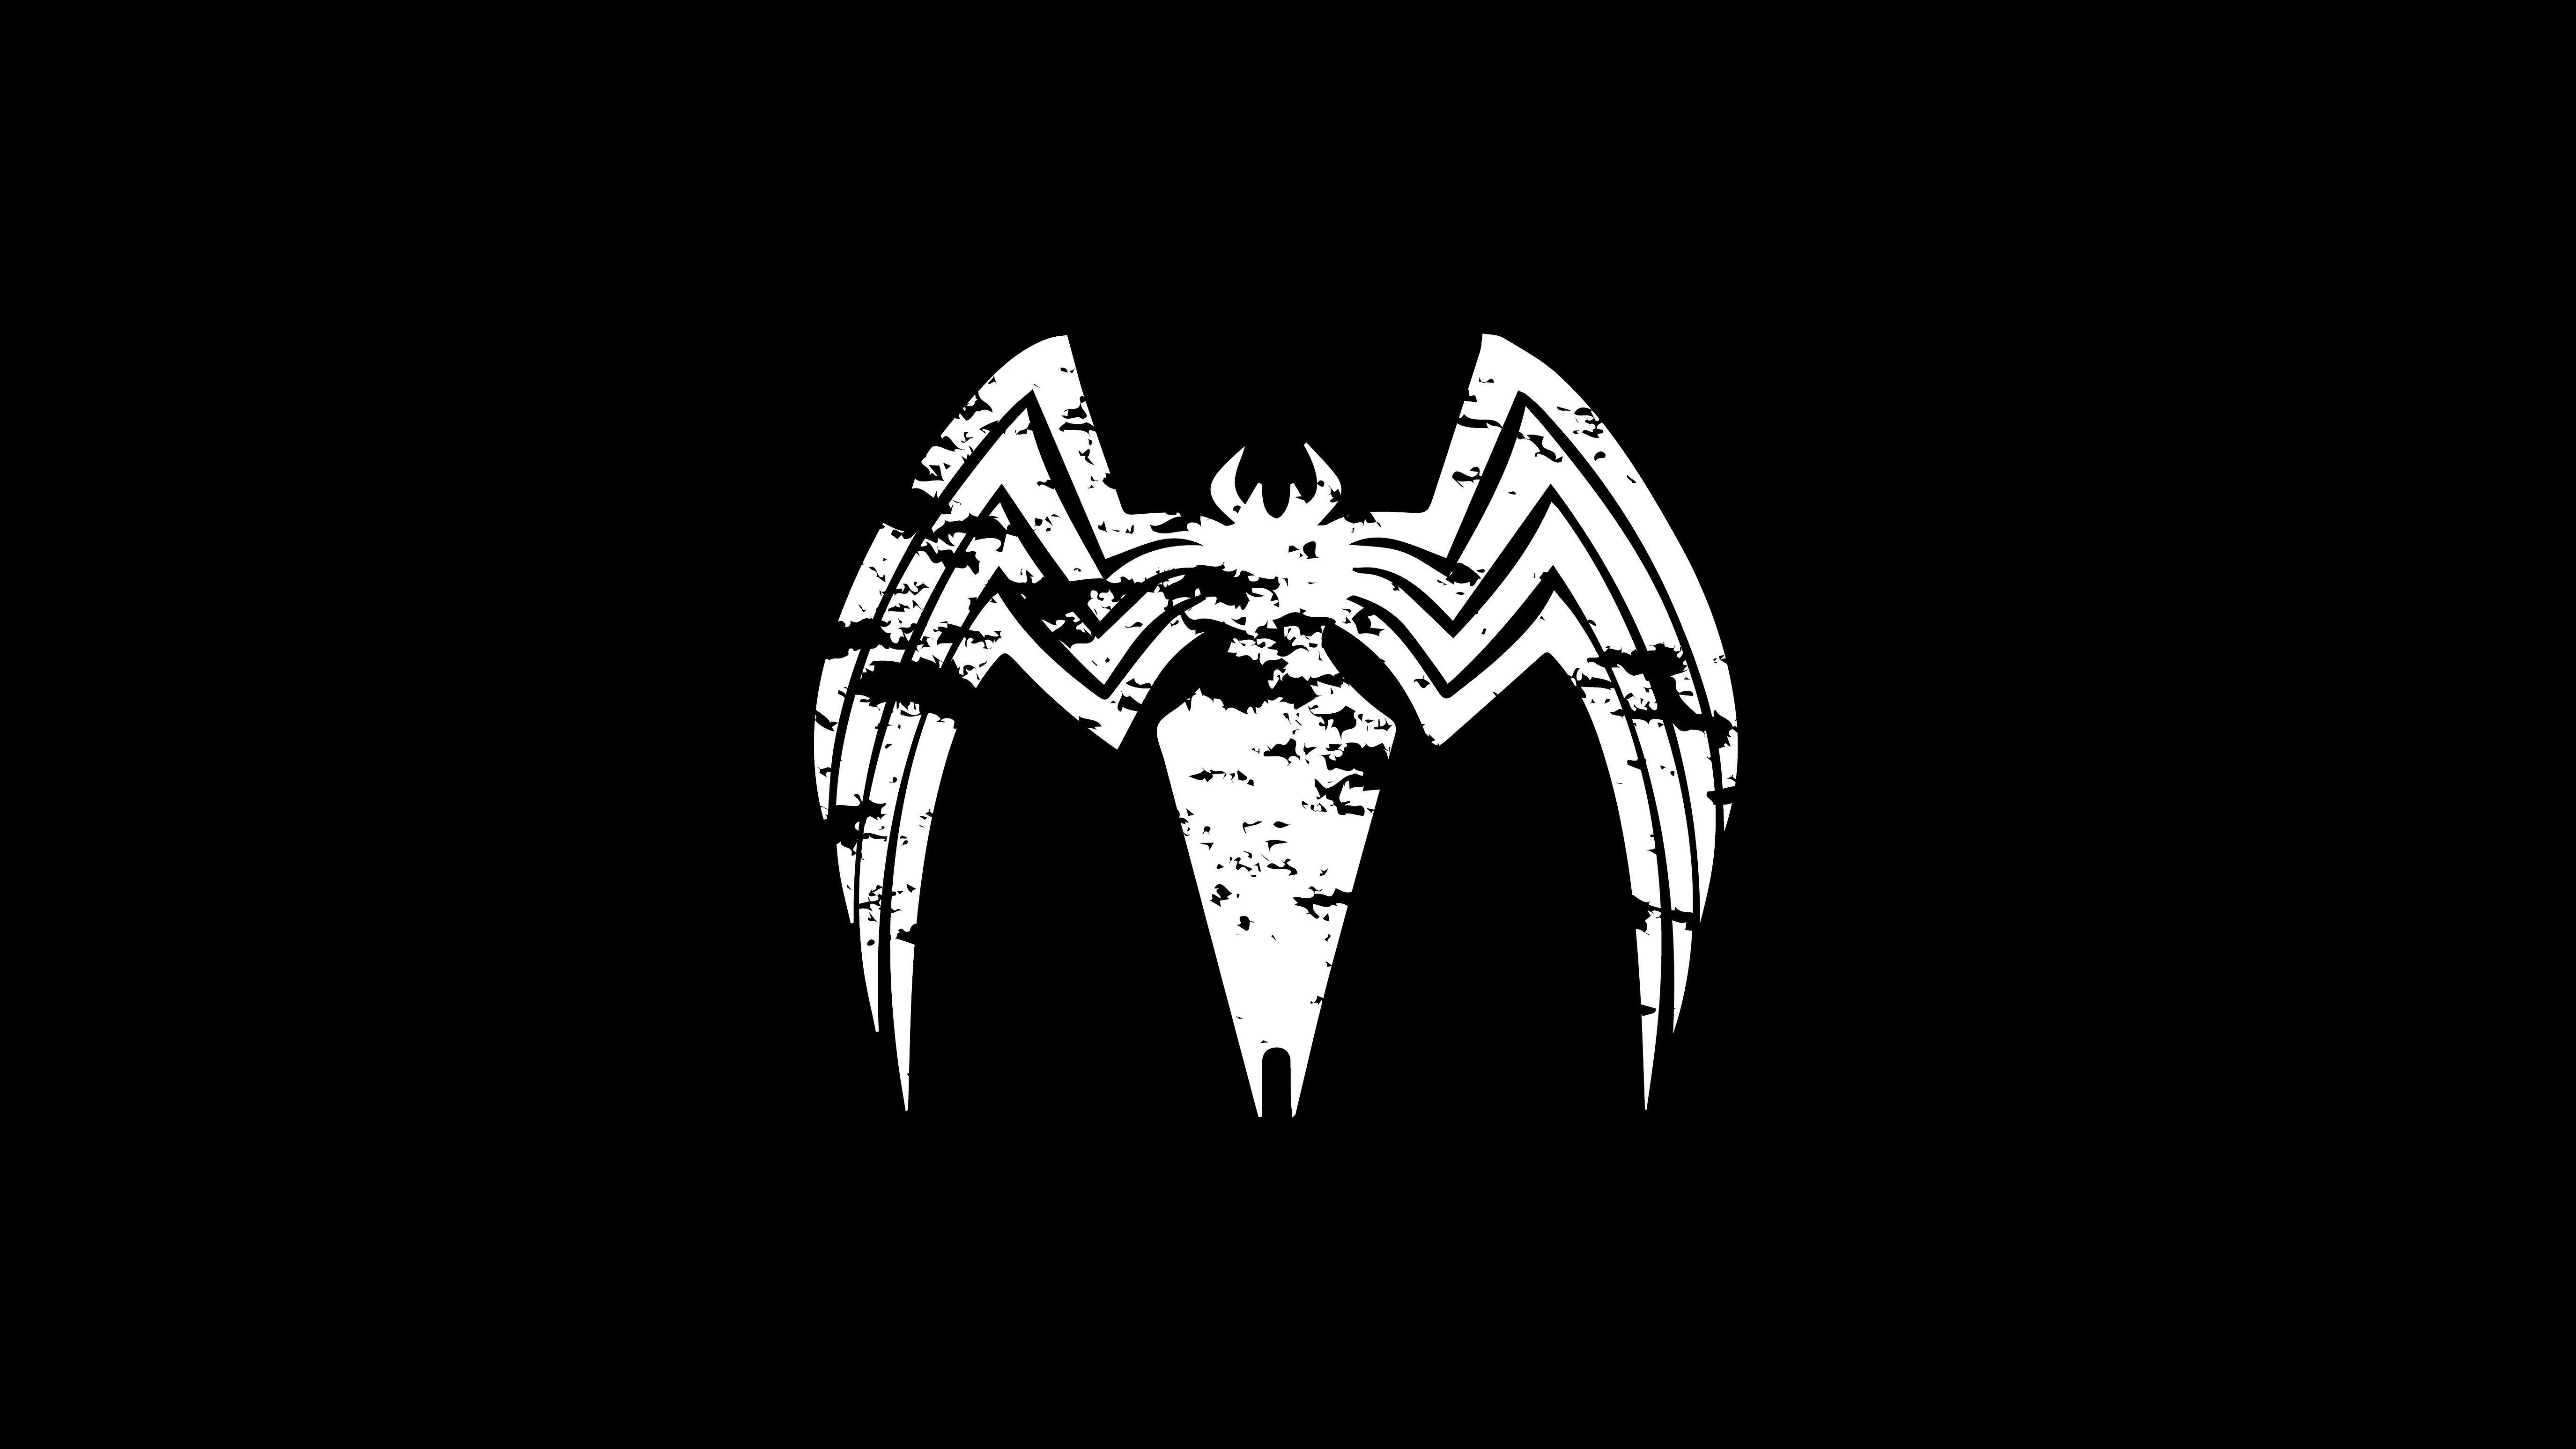 Venom Logo - Venom Logo 4k, HD Superheroes, 4k Wallpapers, Images, Backgrounds ...